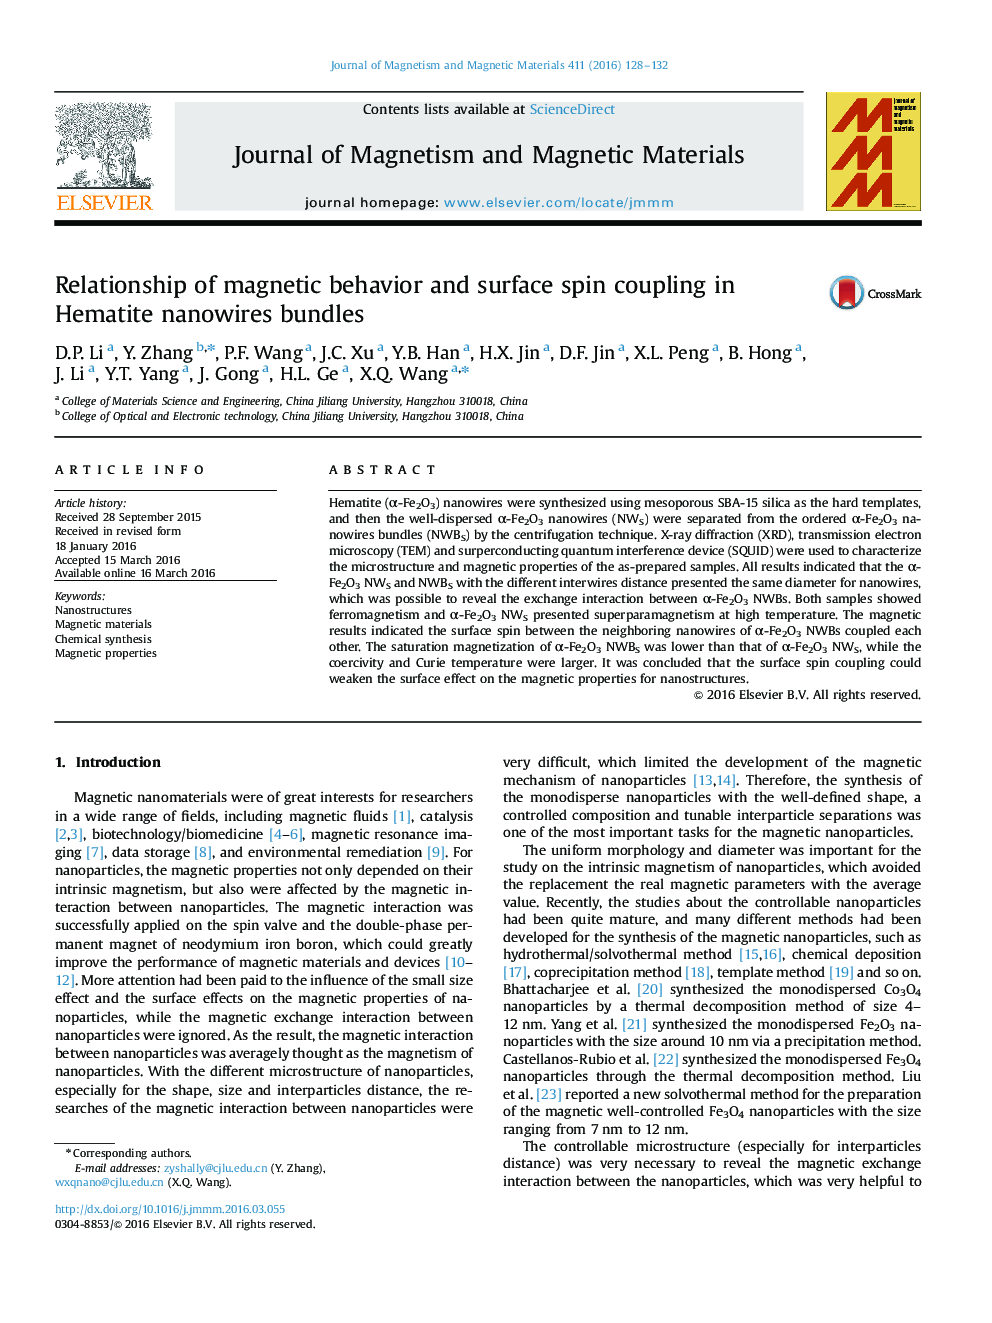 رابطه رفتار مغناطیسی و کوپلینگ چرخش سطح در بسته های نانوسیم های هماتیت 